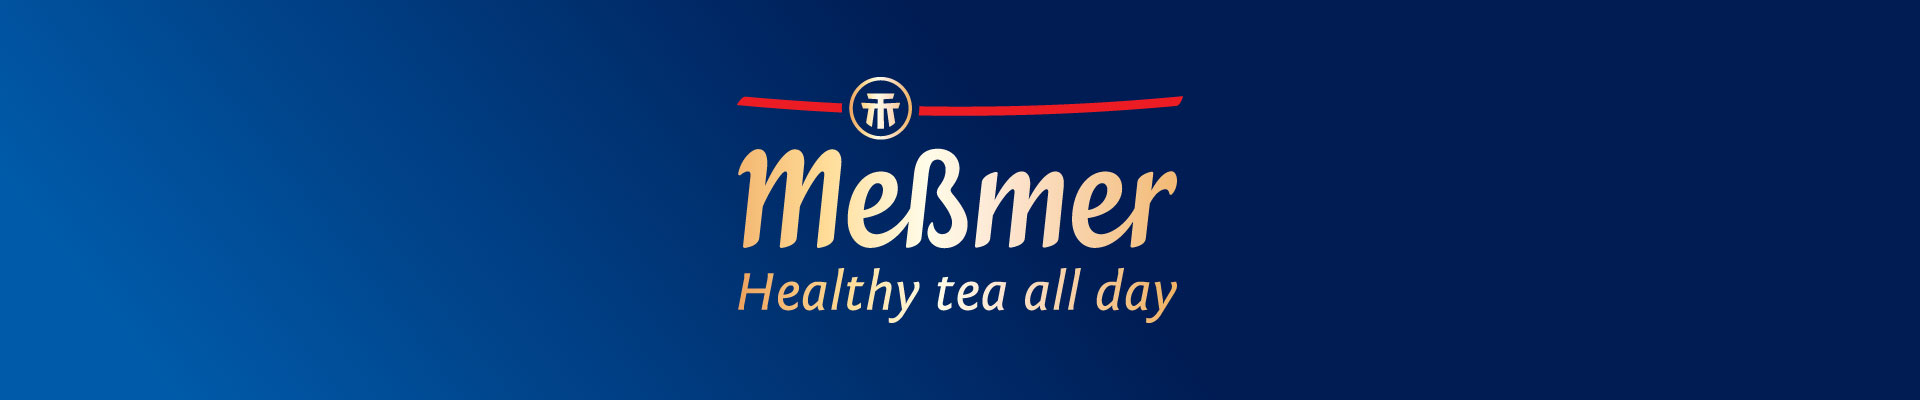 Logo trà túi lọc của đức Messmer - trà Mebmer